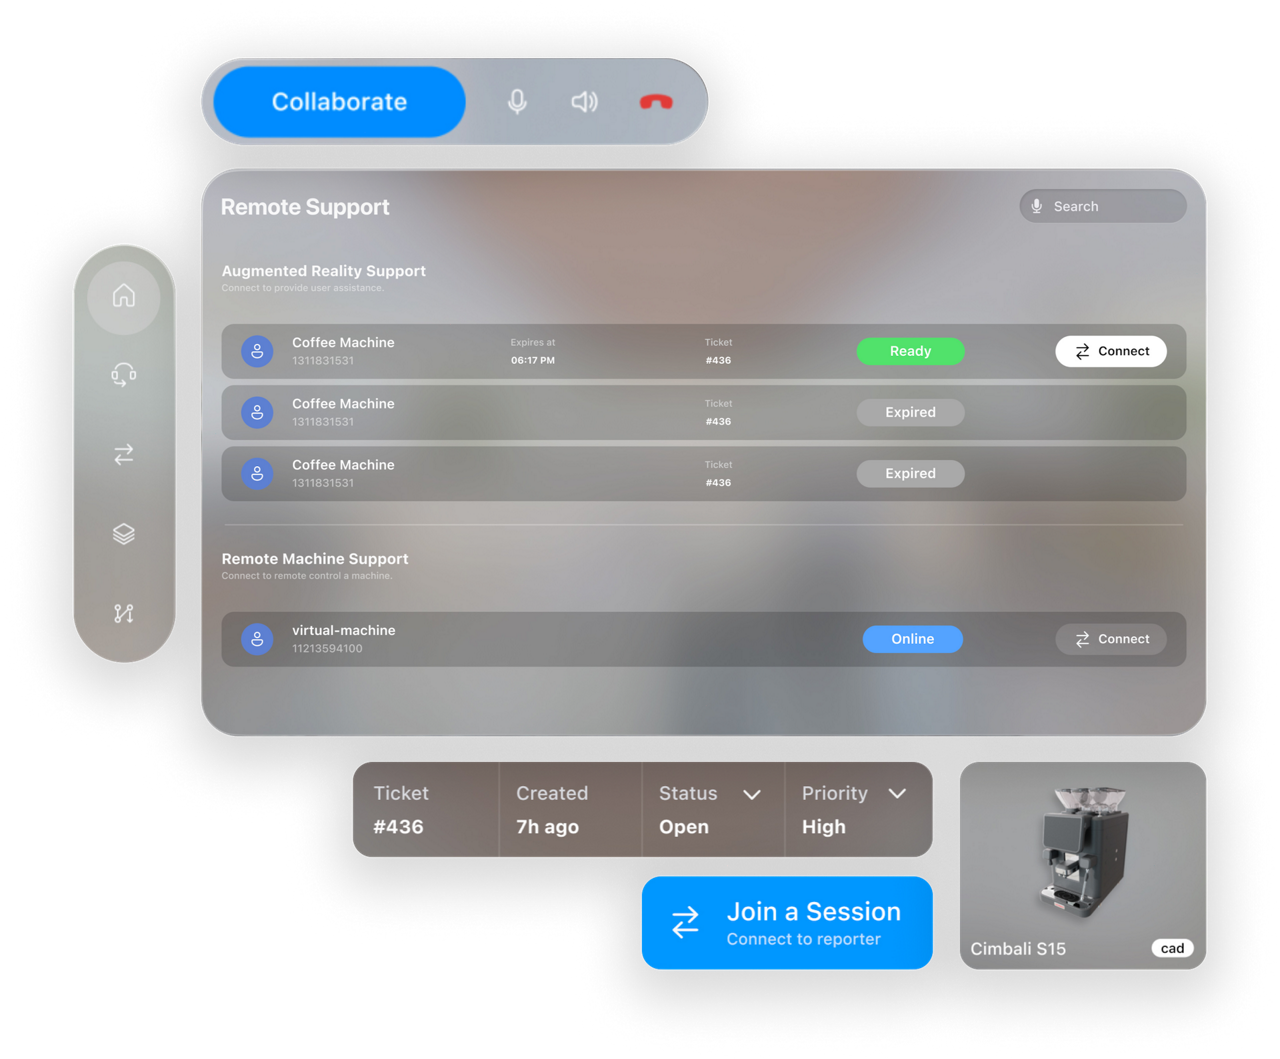 Visão geral da interface do usuário para suporte remoto de máquinas de café com o Apple Vision Pro